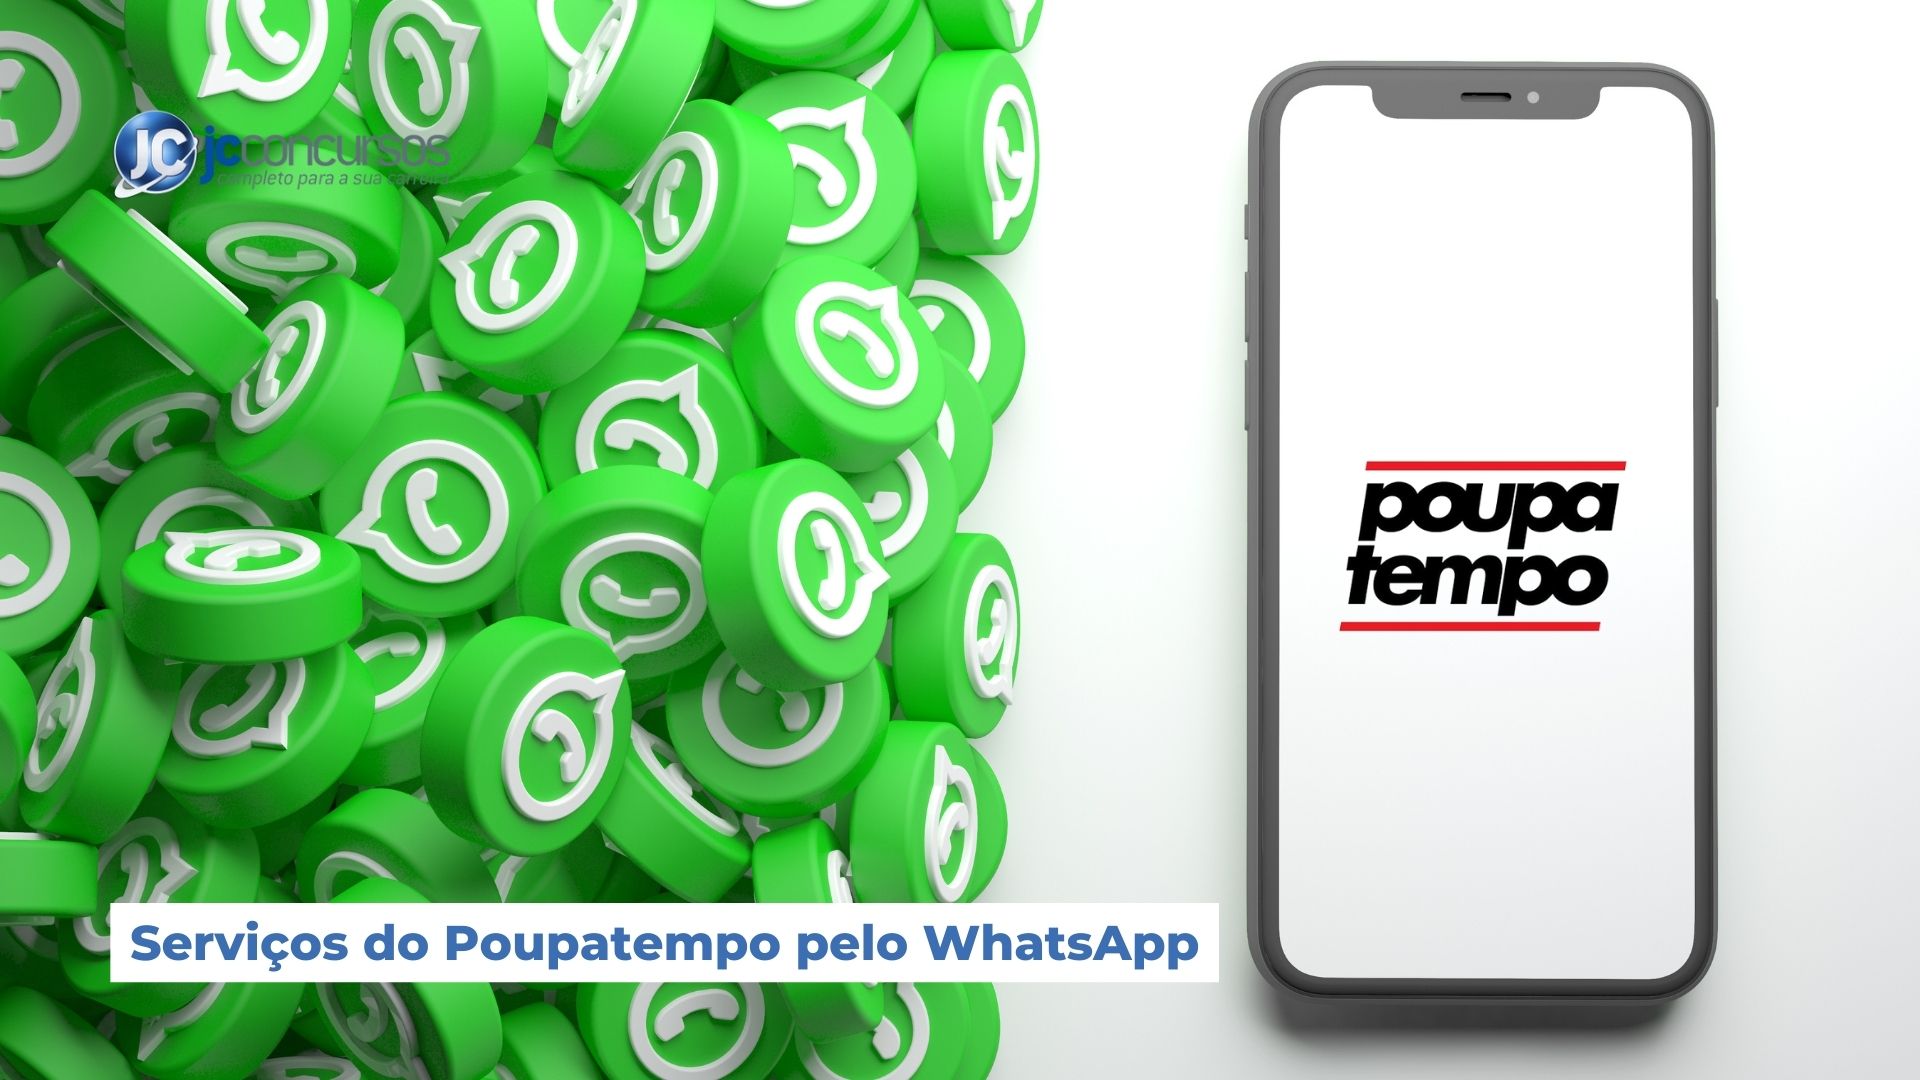 servicos do poupatempo pelo whatsapp.1jpg